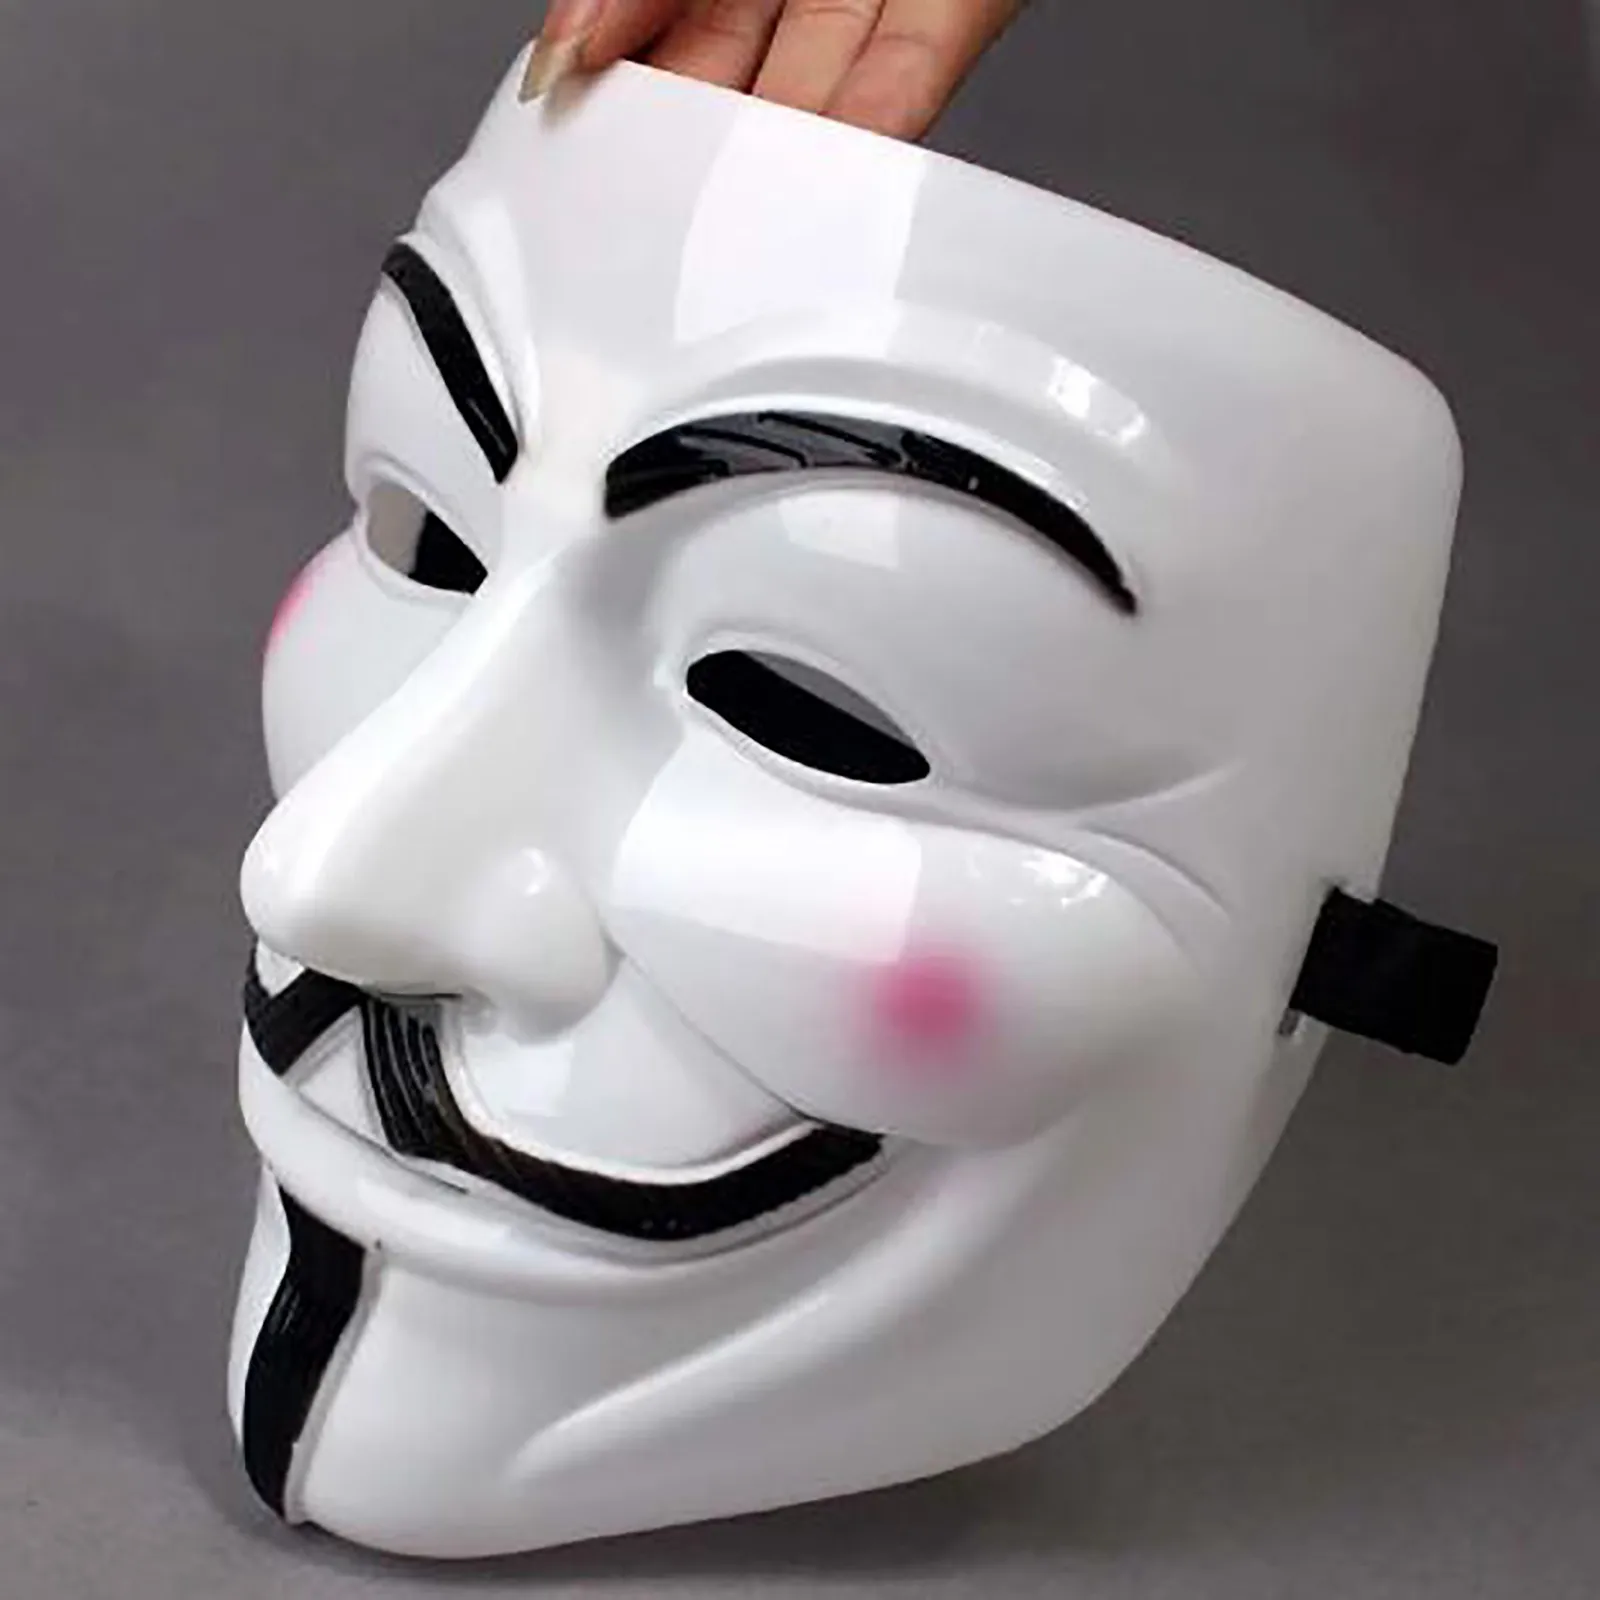 Máscara de Cosplay de Vendetta para Halloween, máscara de Hackers para fiesta Diy, máscara facial de Anime Anonymous, color blanco y negro, 1 unidad